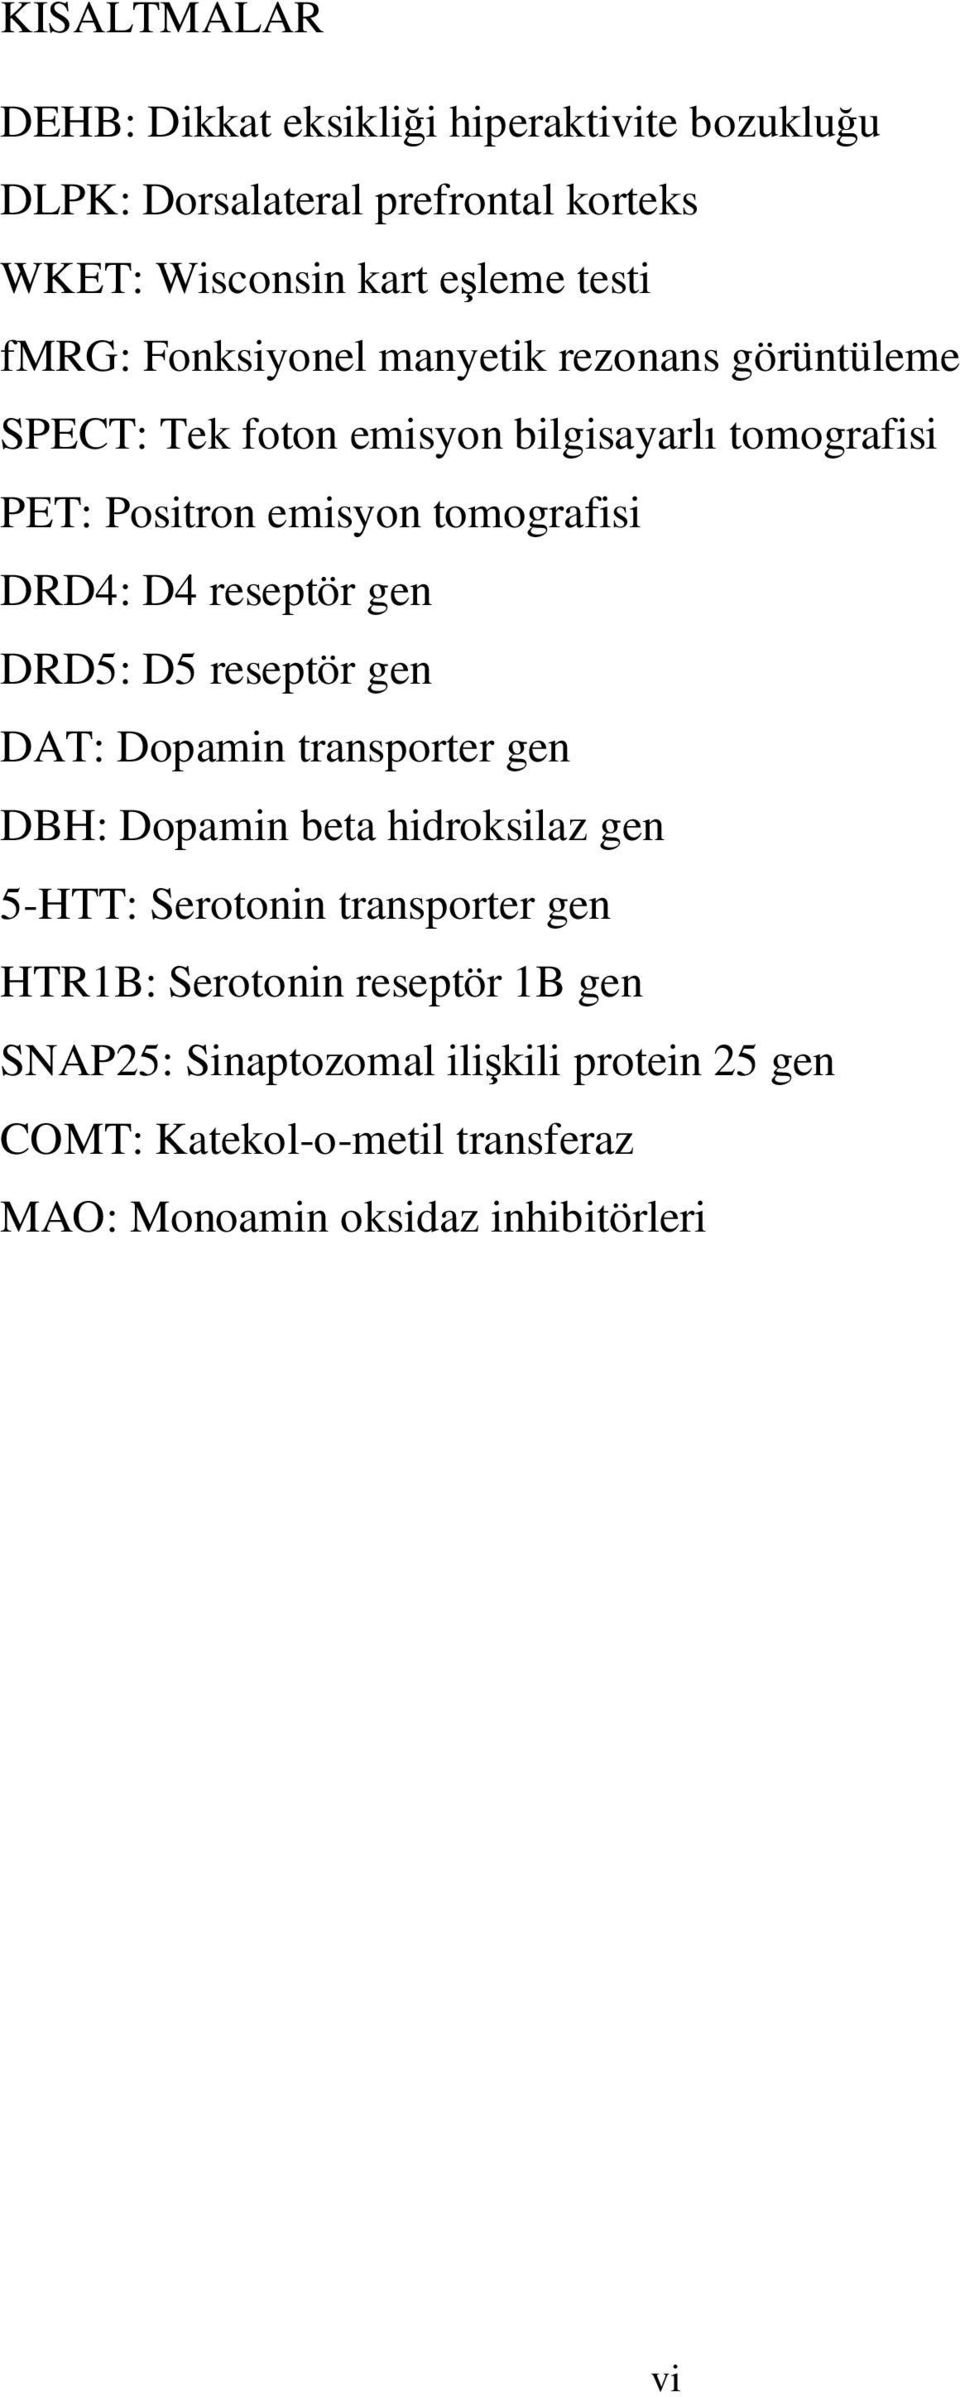 reseptör gen DRD5: D5 reseptör gen DAT: Dopamin transporter gen DBH: Dopamin beta hidroksilaz gen 5-HTT: Serotonin transporter gen HTR1B: